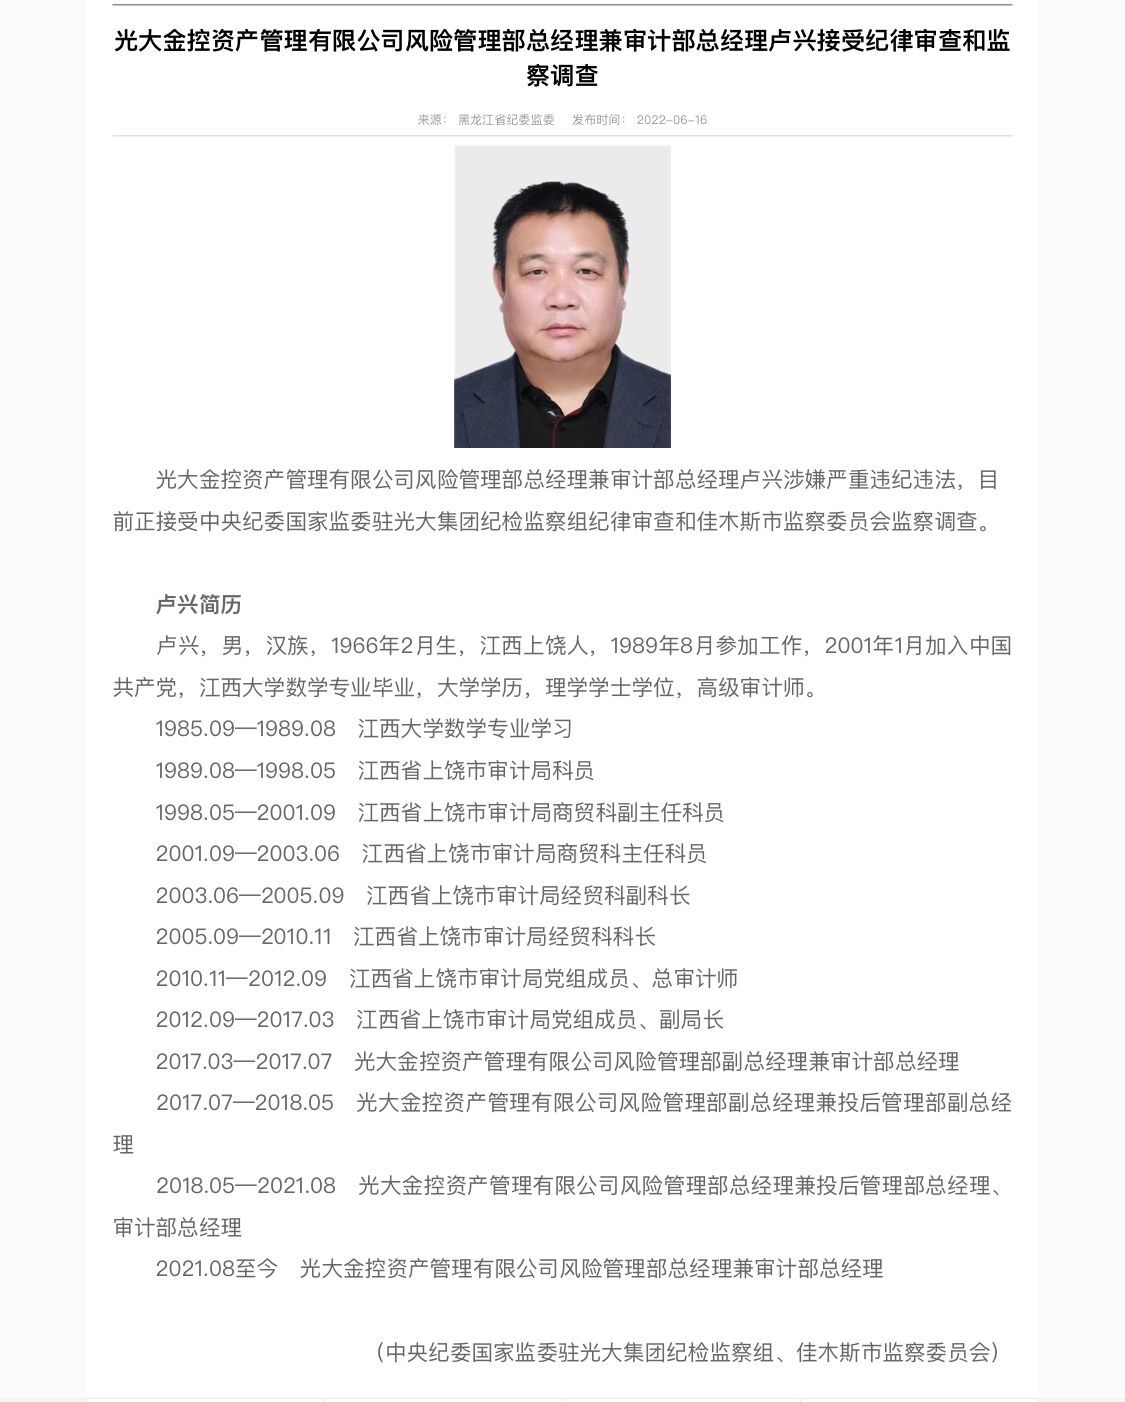 “光大系”公司又一高管落马 光大金控卢兴涉嫌违纪违法被查